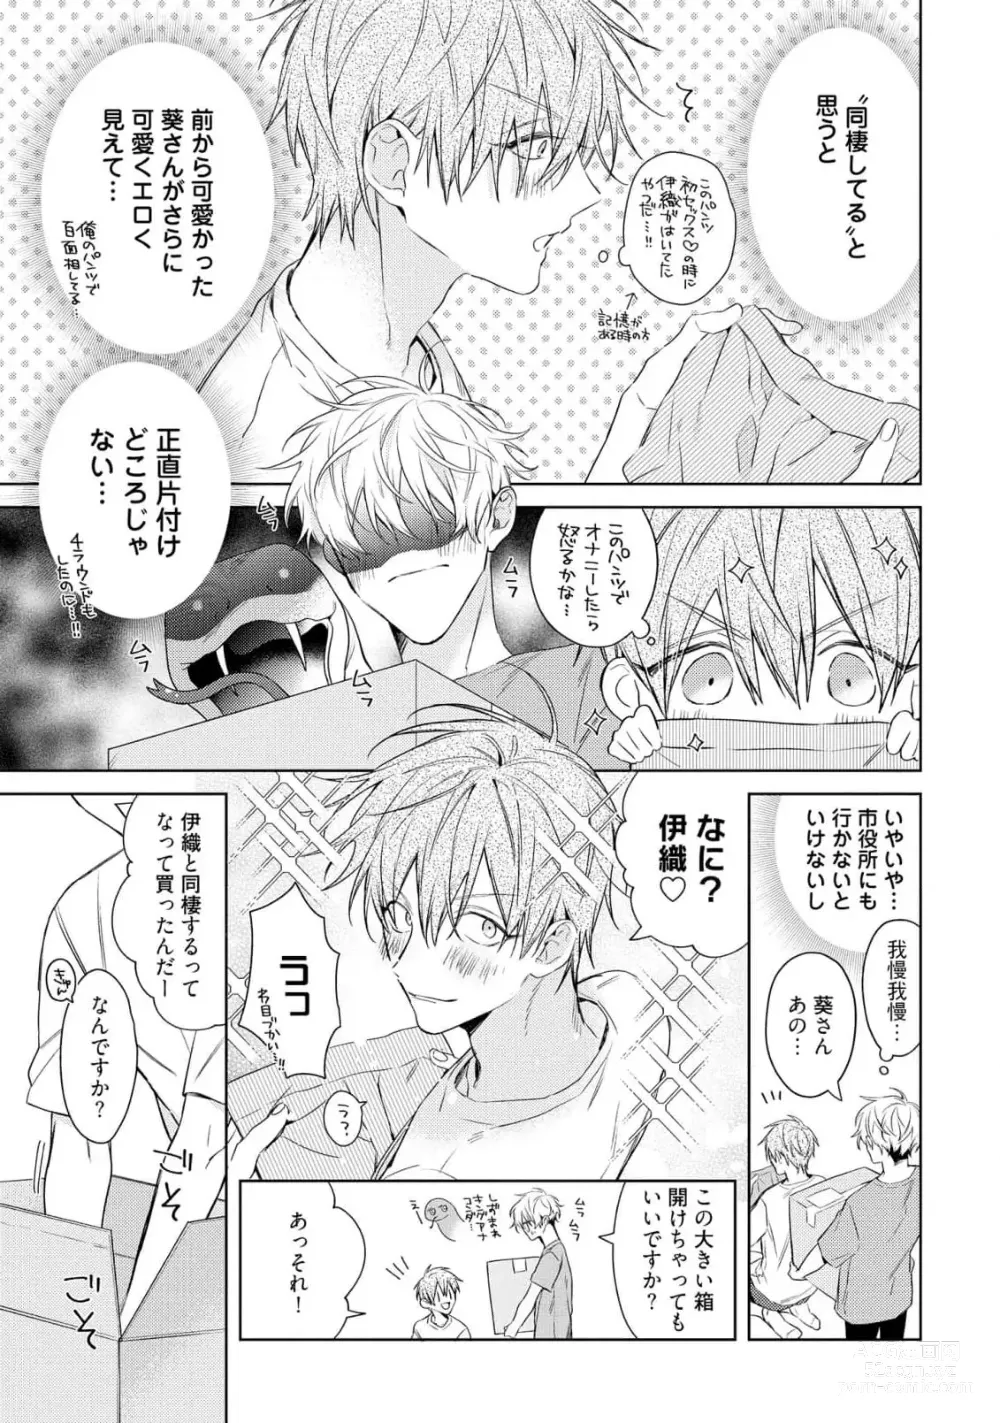 Page 11 of manga Motto! Ecchi wa shuu 7 Kibou Desu!